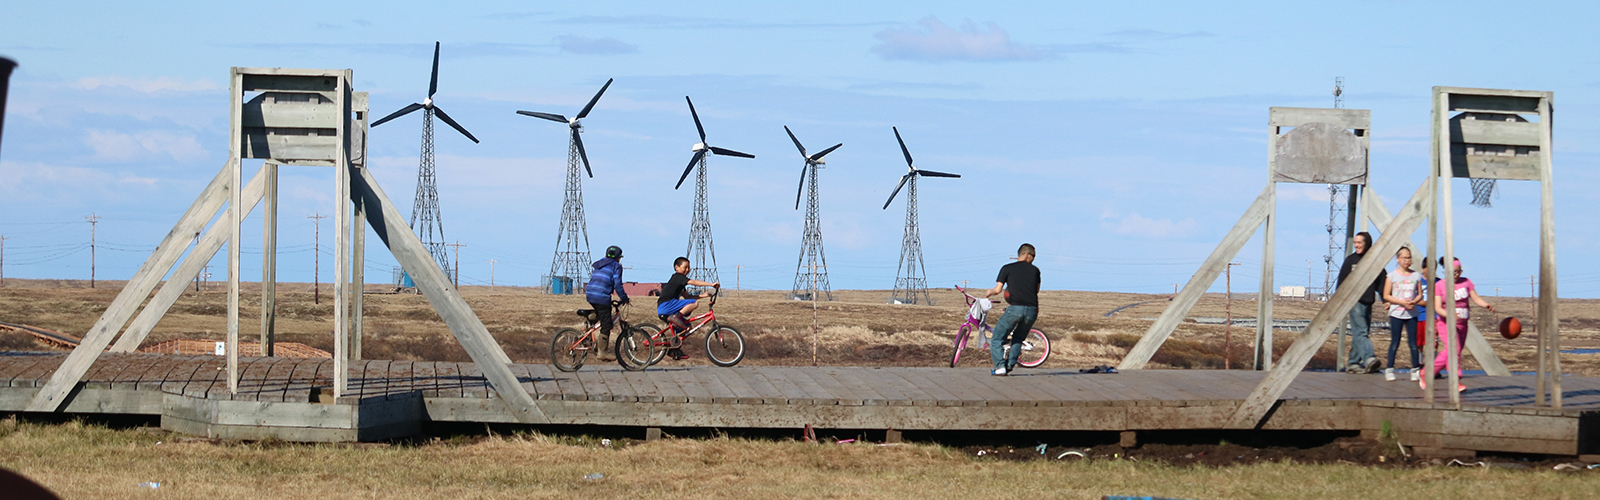 Windmills and kids on a boardwalk